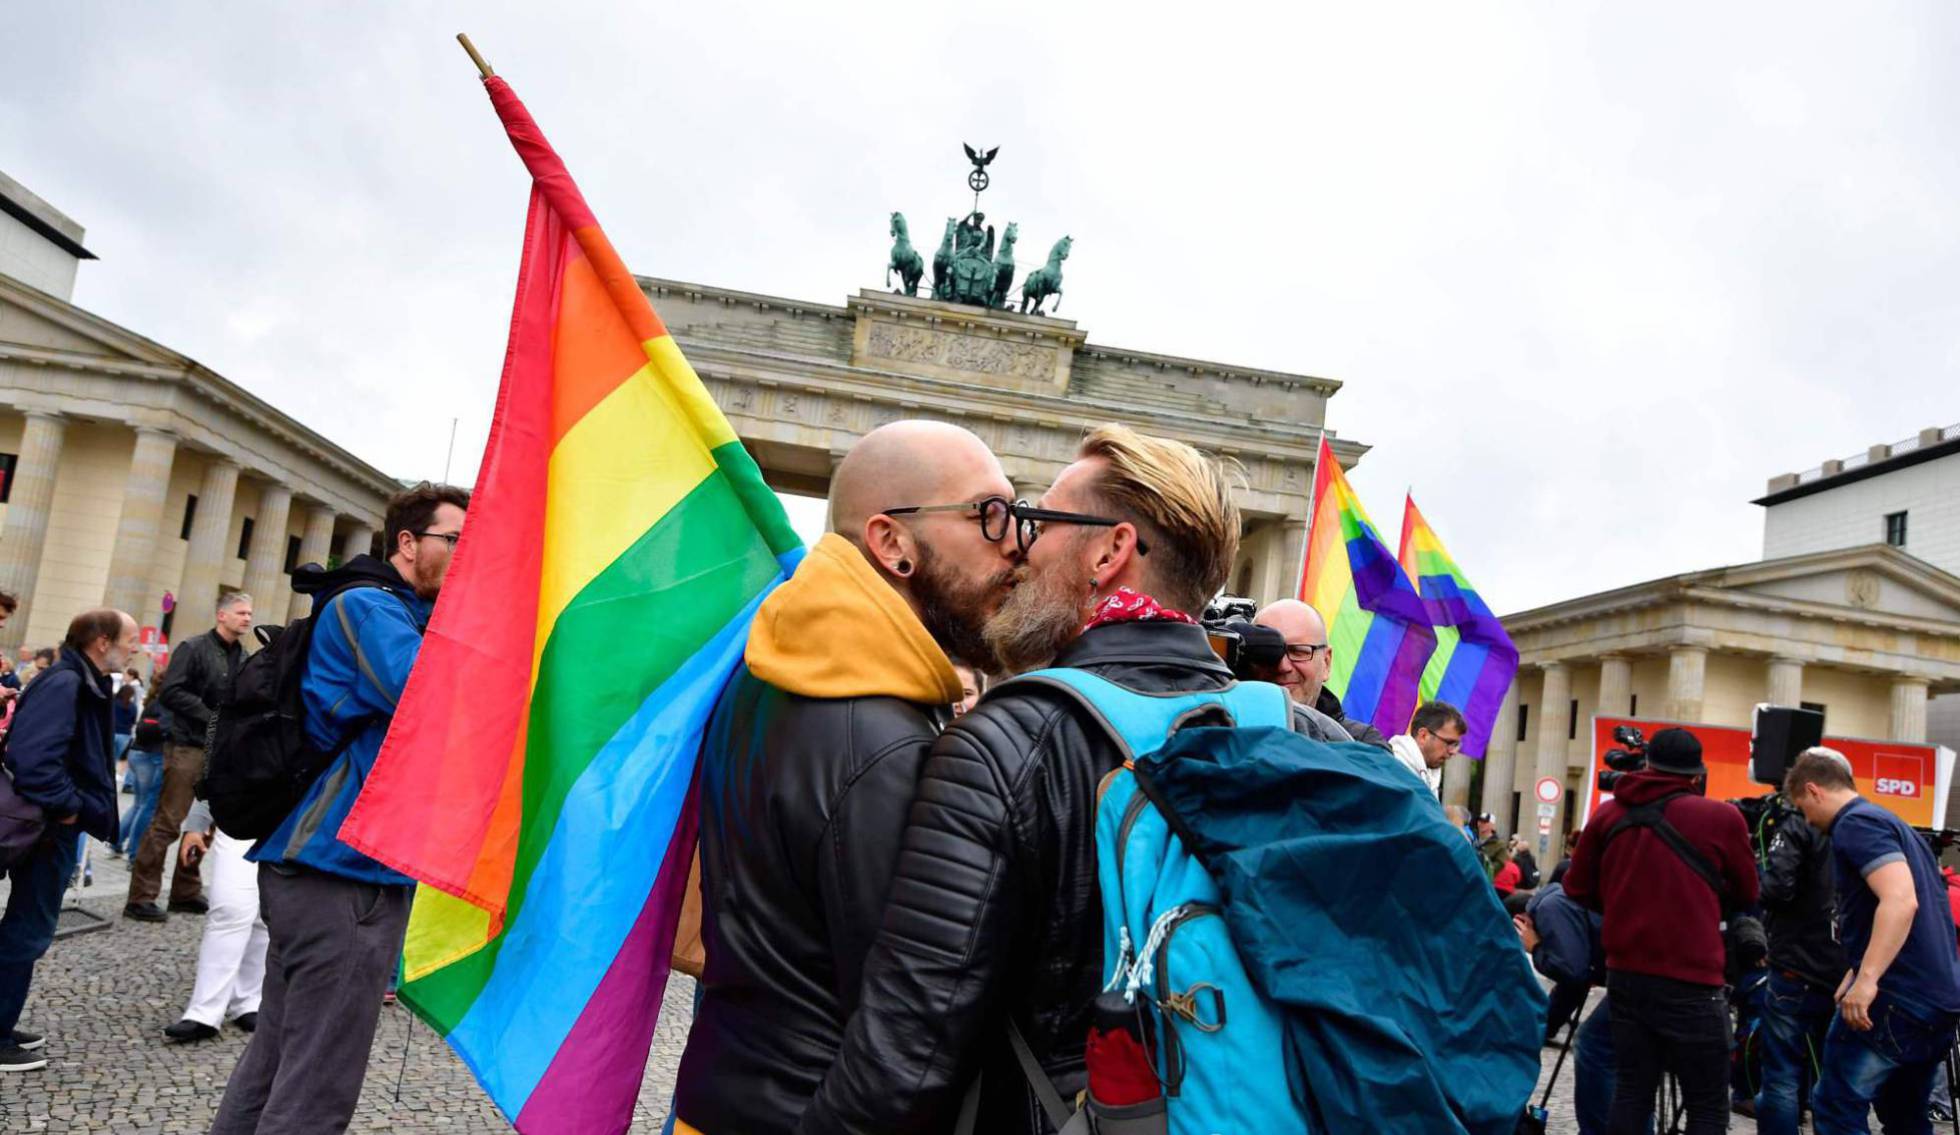 Los Matrimonios Homosexuales También Gozan De Libertad De Circulación En La Ue Internacional